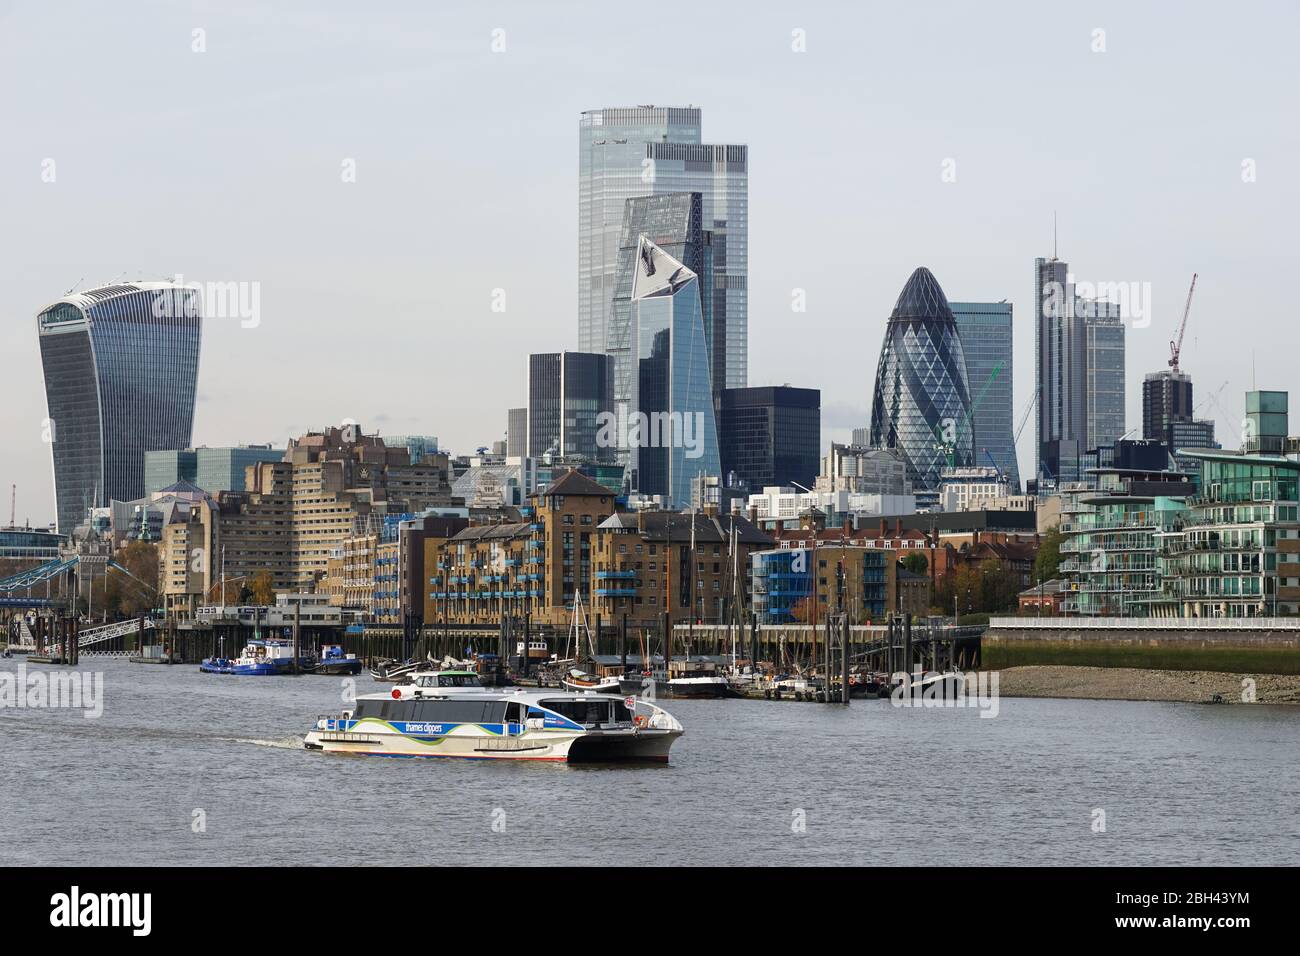 Le collierper de la Tamise sur la Tamise avec les gratte-ciel de la ville en arrière-plan, Londres Angleterre Royaume-Uni Banque D'Images